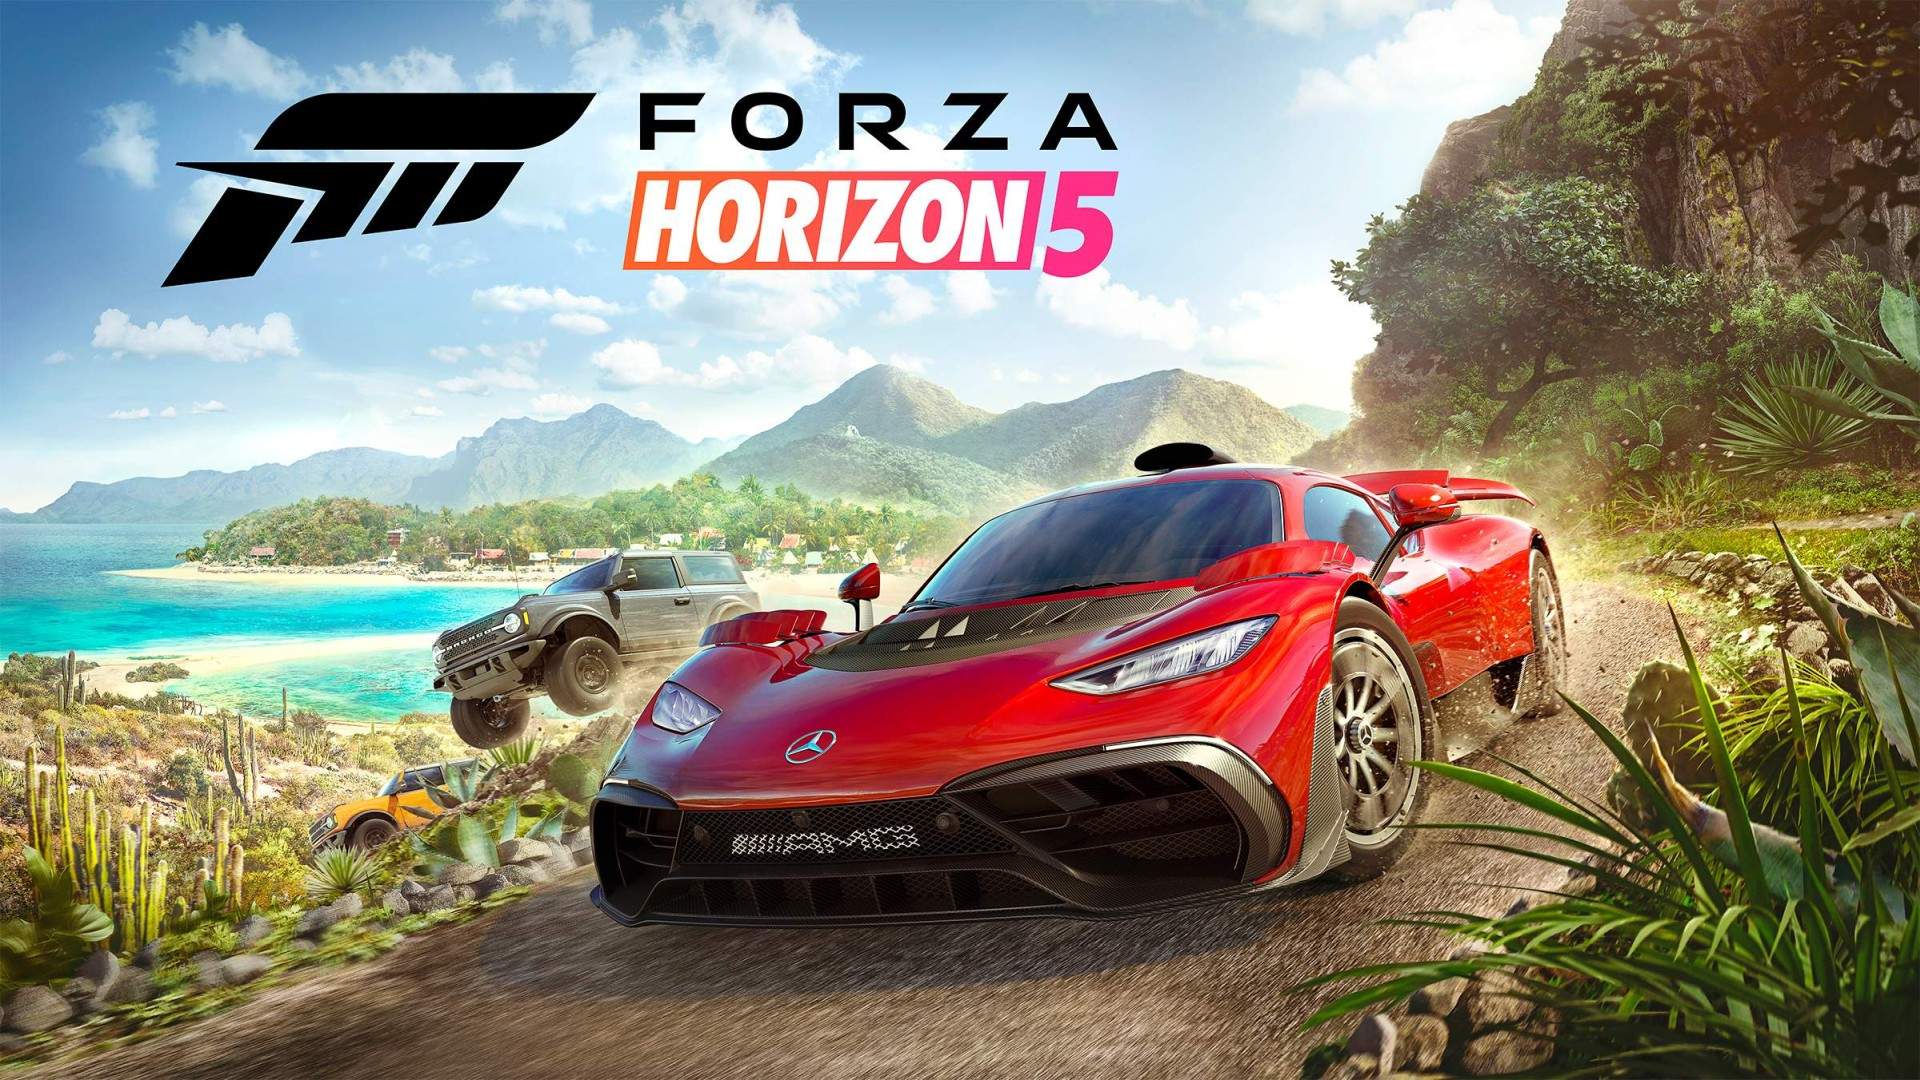 جنون سرعت در دنیایی آزاد | نقد و بررسی بازی Forza Horizon 5